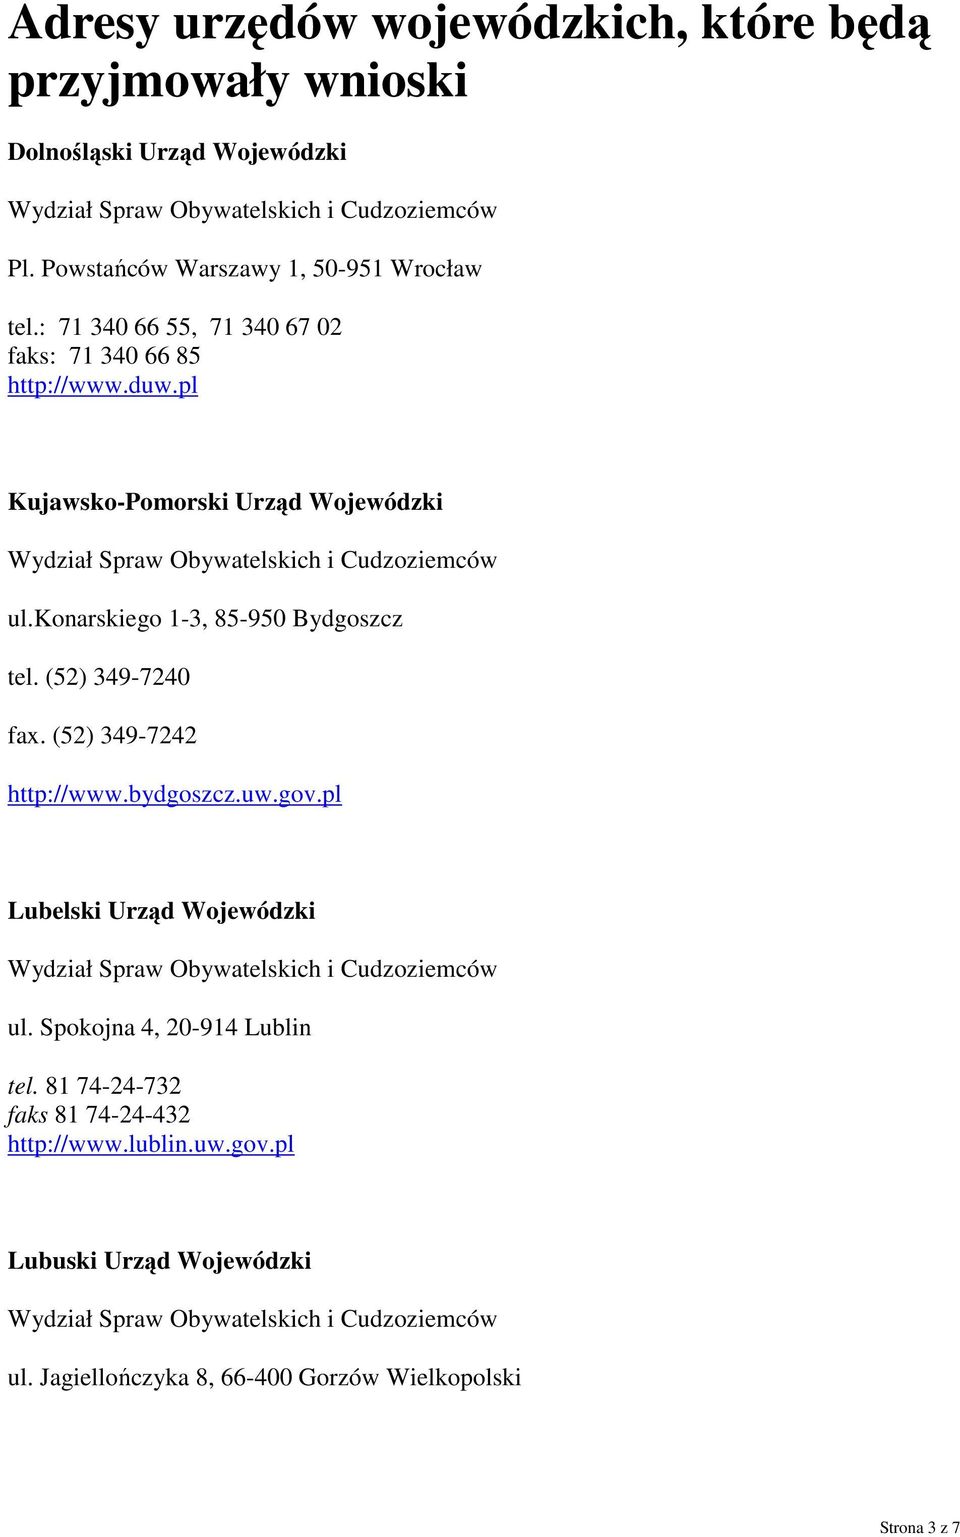 konarskiego 1-3, 85-950 Bydgoszcz tel. (52) 349-7240 fax. (52) 349-7242 http://www.bydgoszcz.uw.gov.pl Lubelski Urząd Wojewódzki ul.